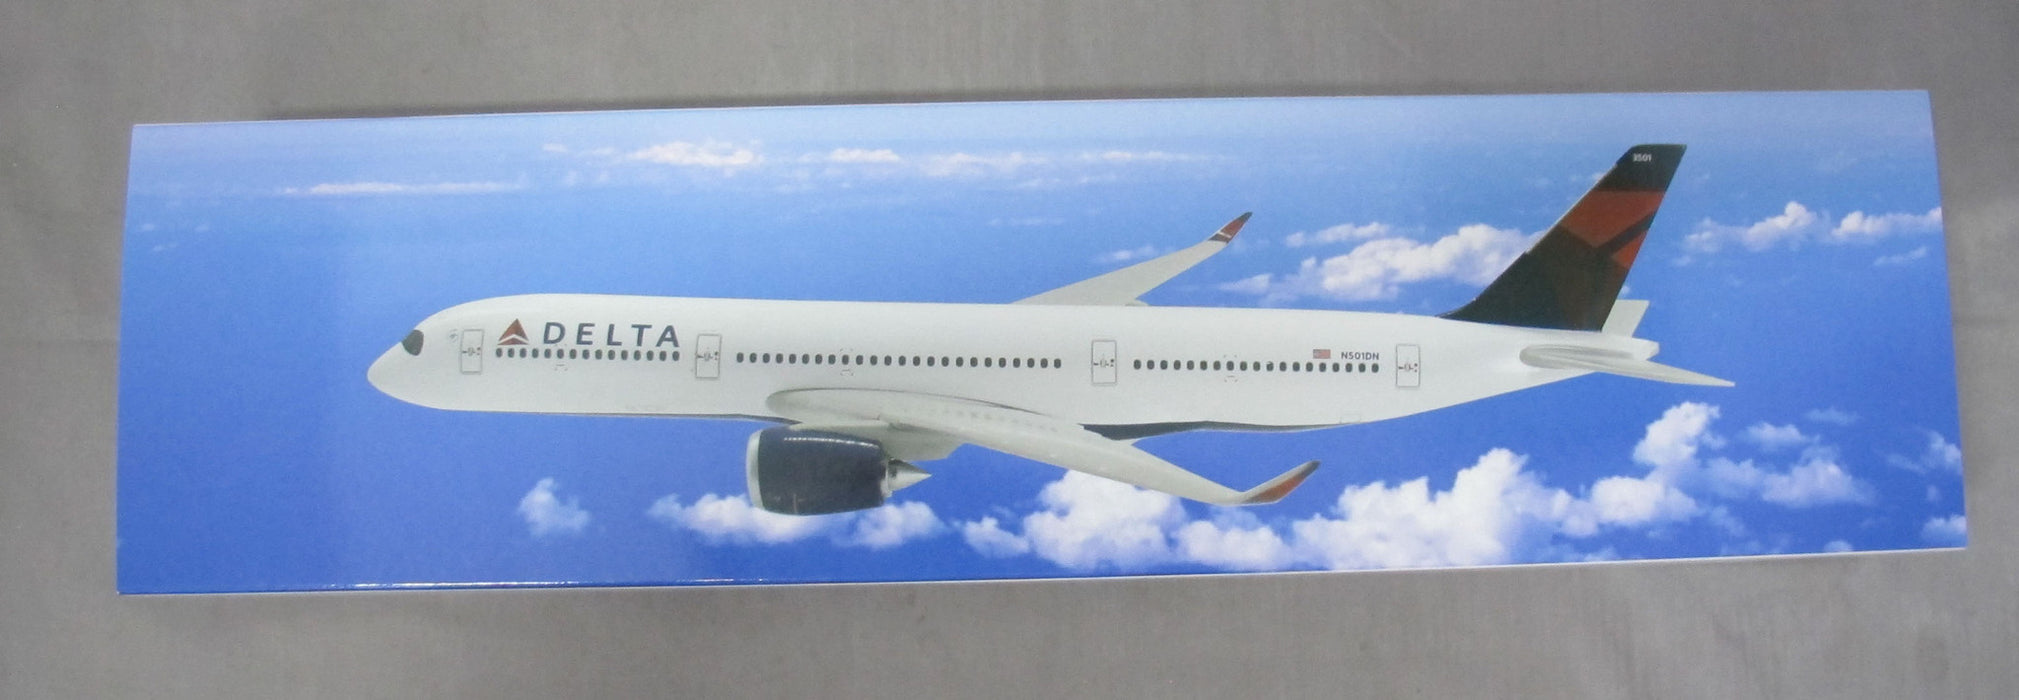 Delta (07-Cur) A350-900 1:200